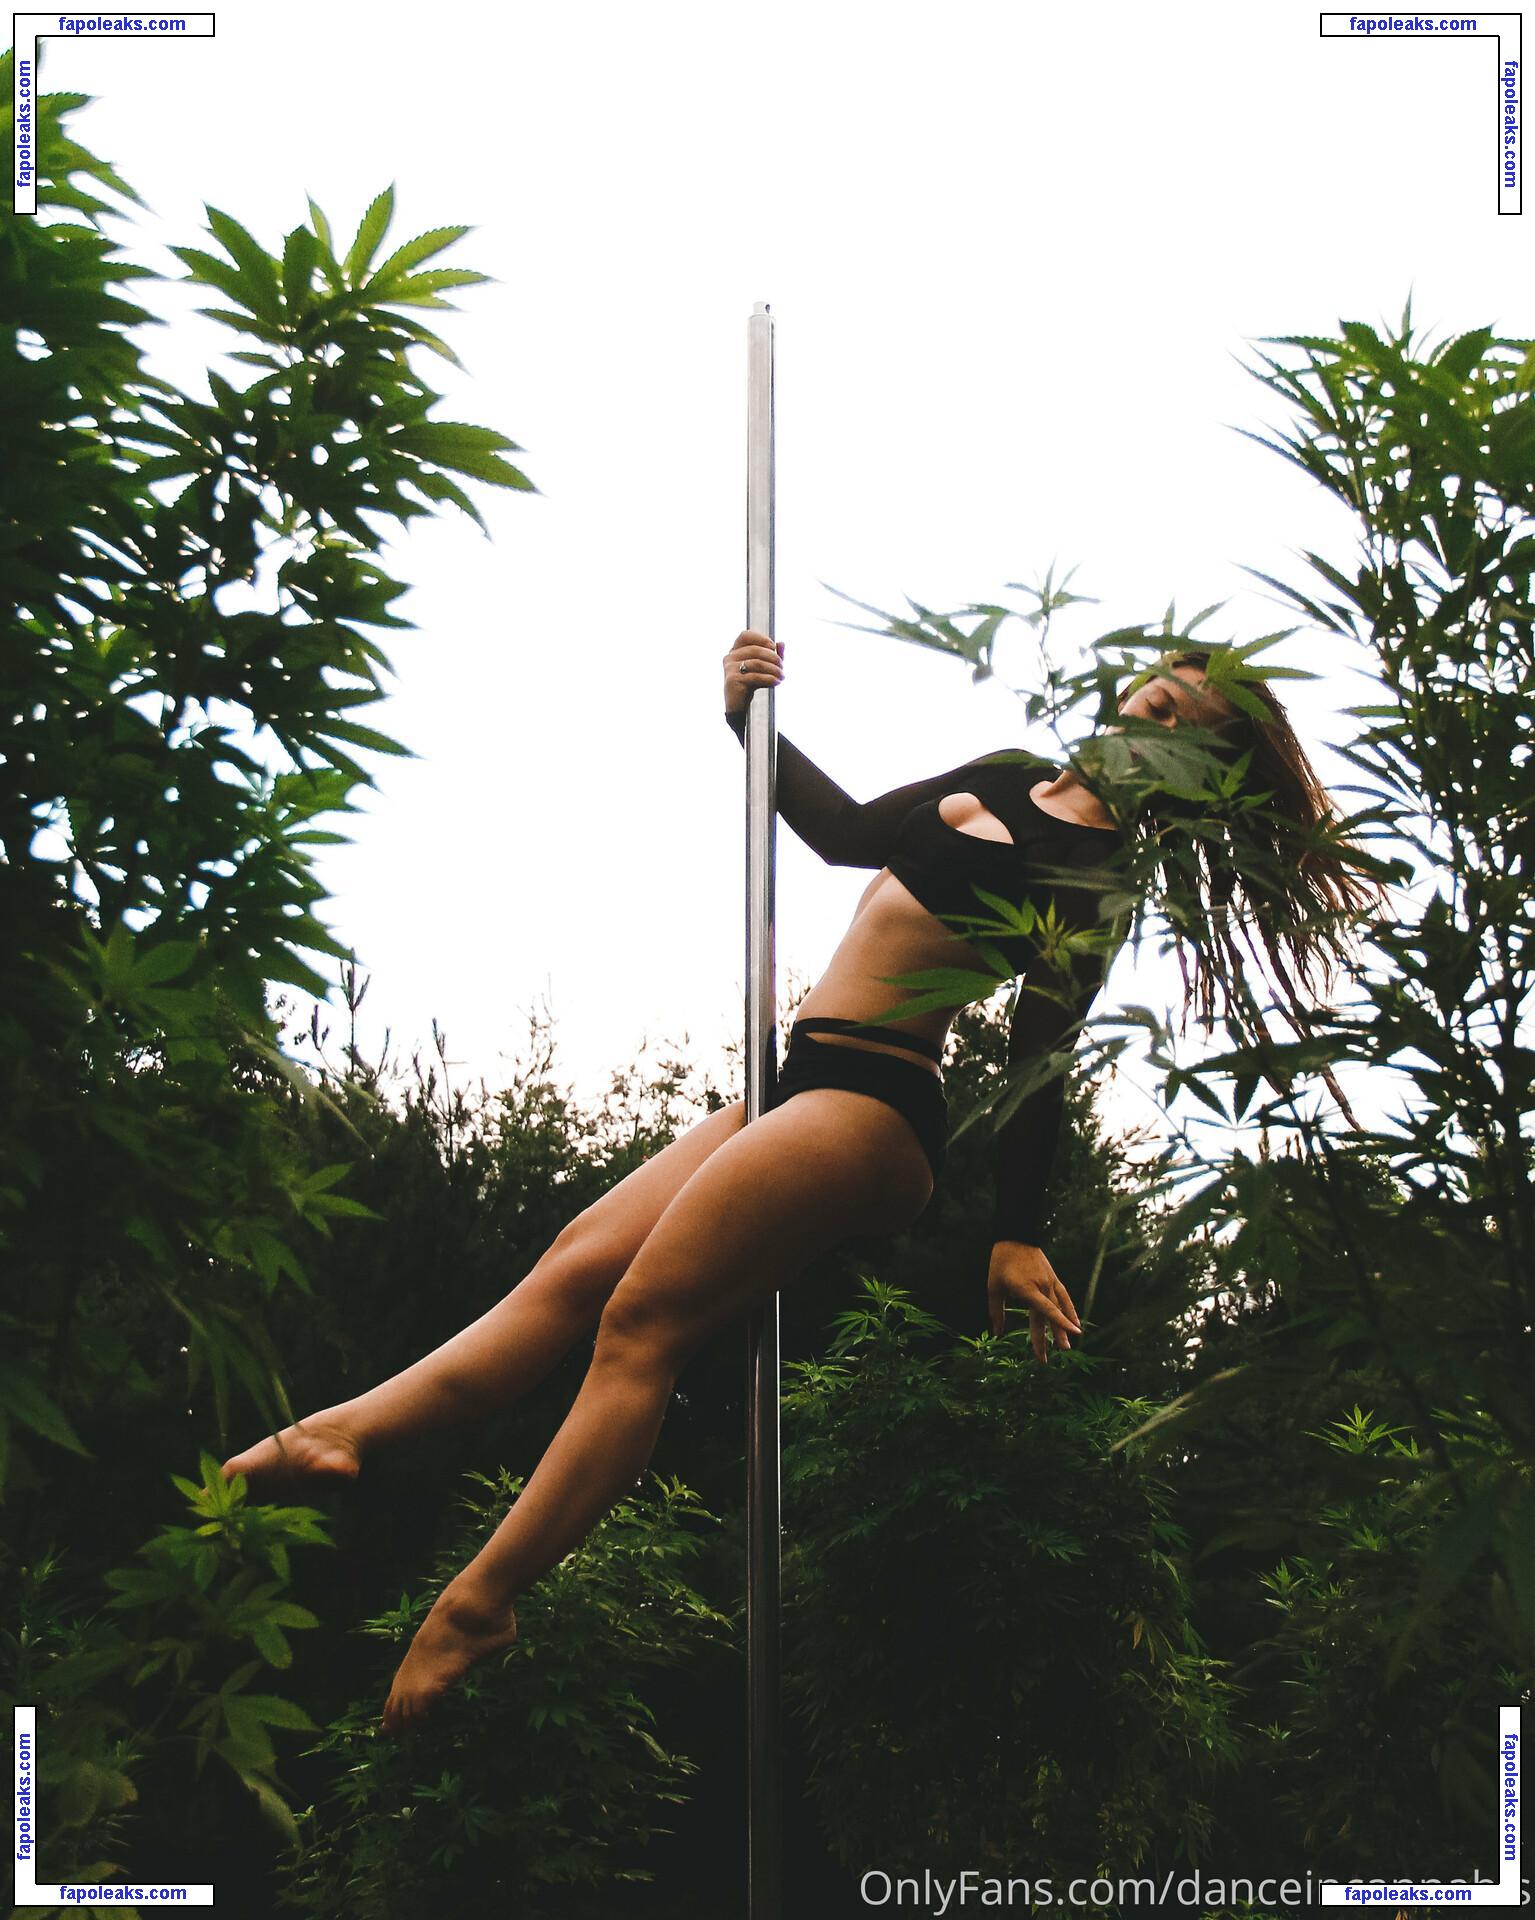 danceincannabis nude photo #0017 from OnlyFans